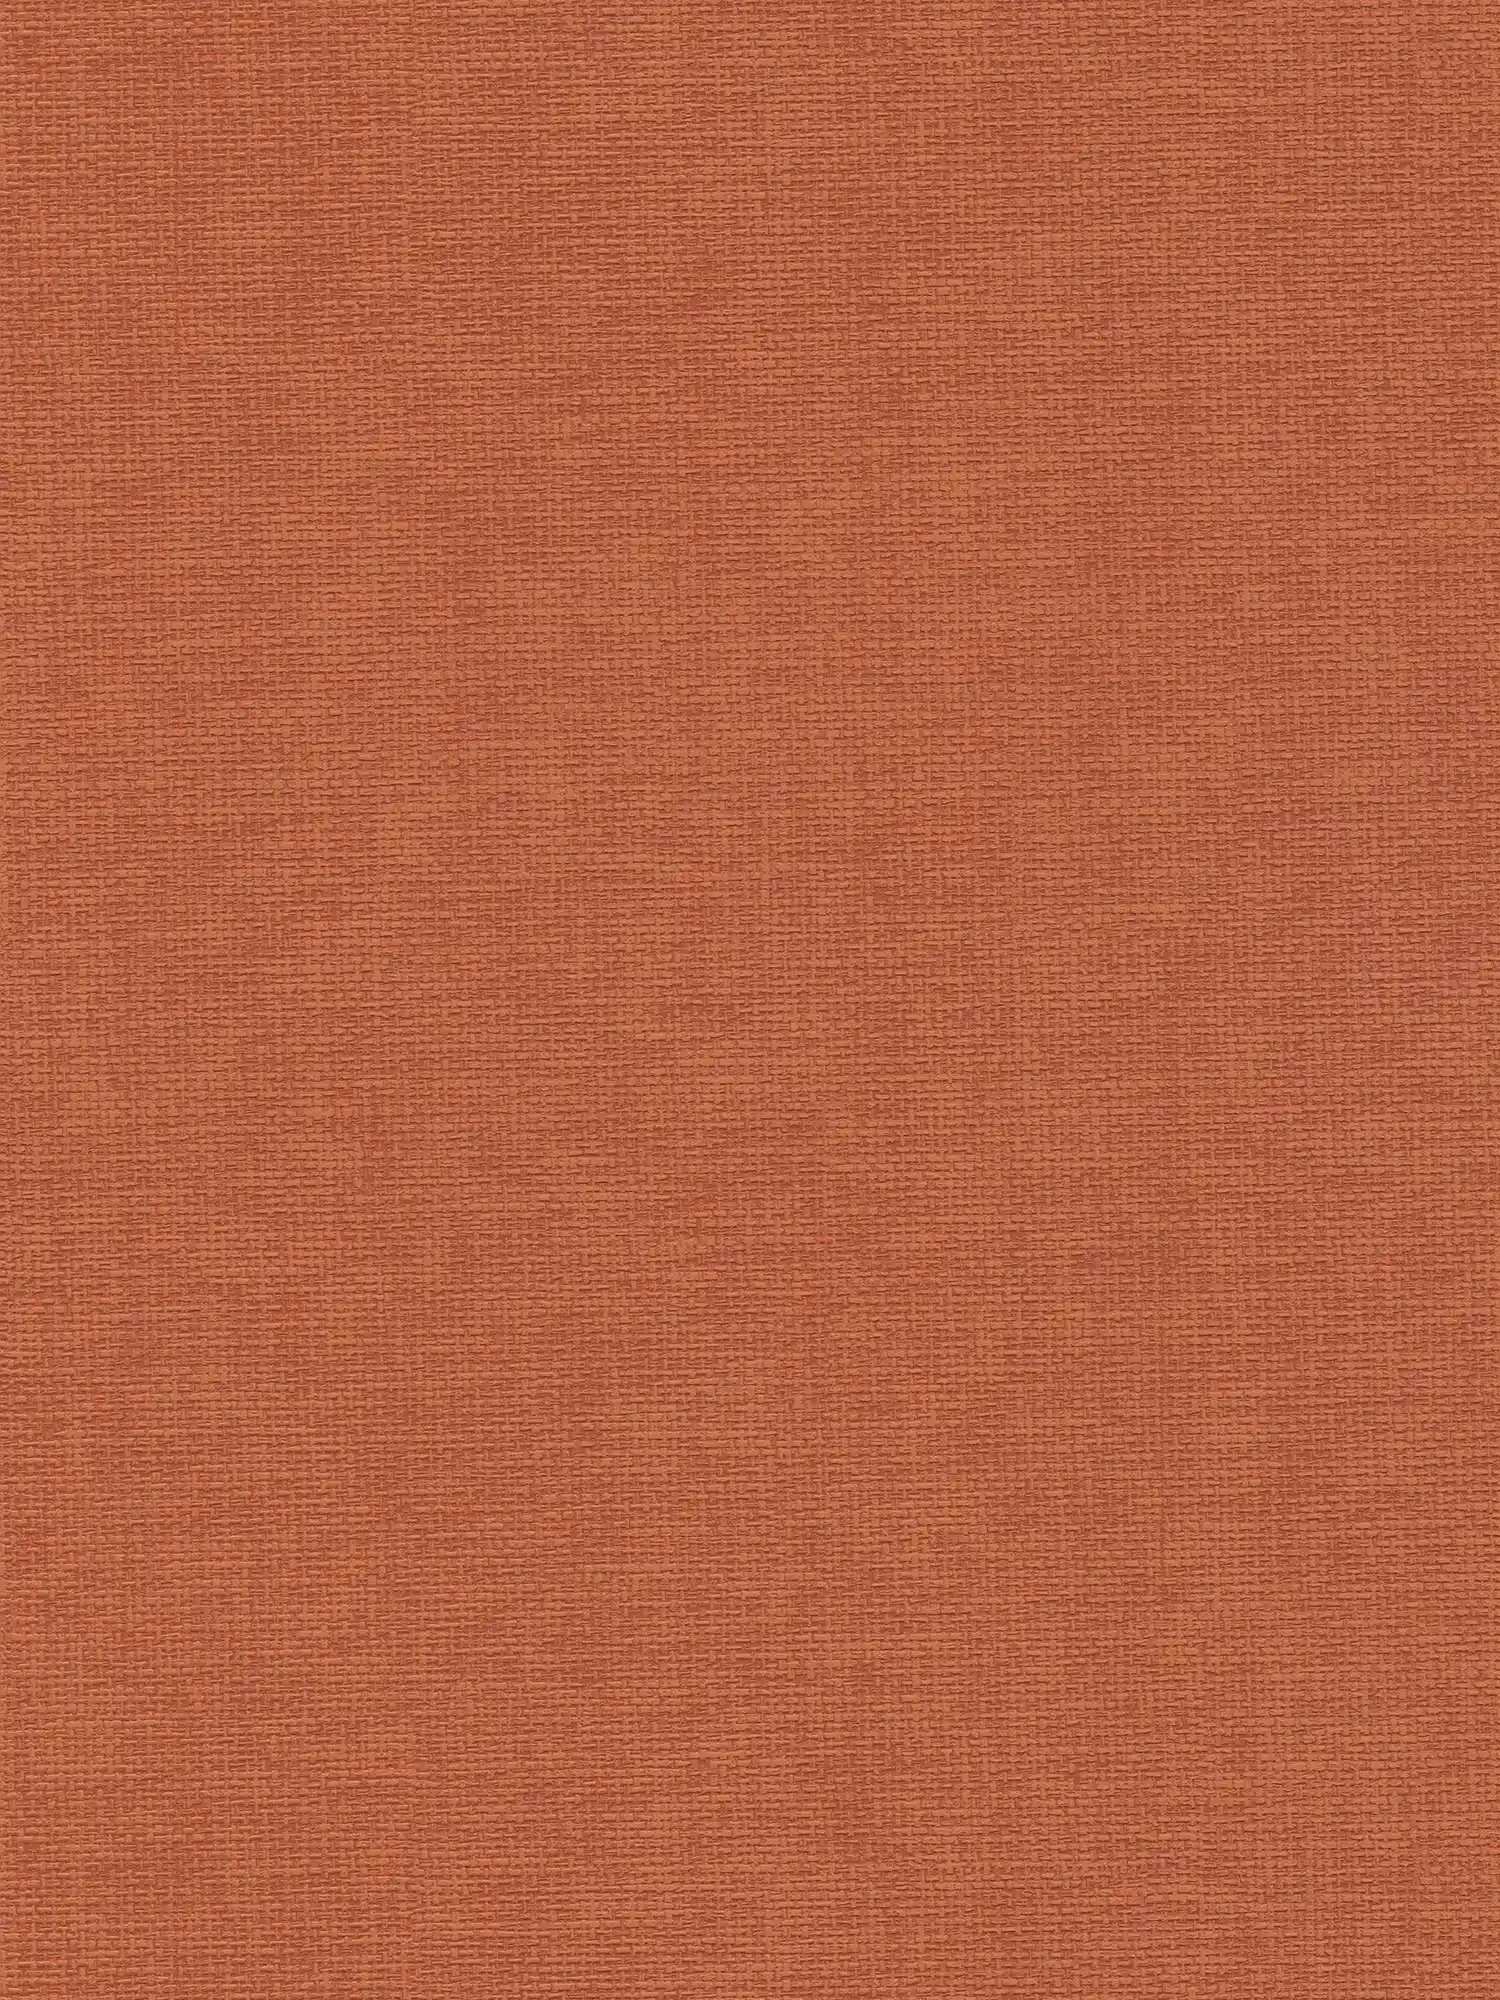 Carta da parati rosso-arancio con struttura tessile - rosso
